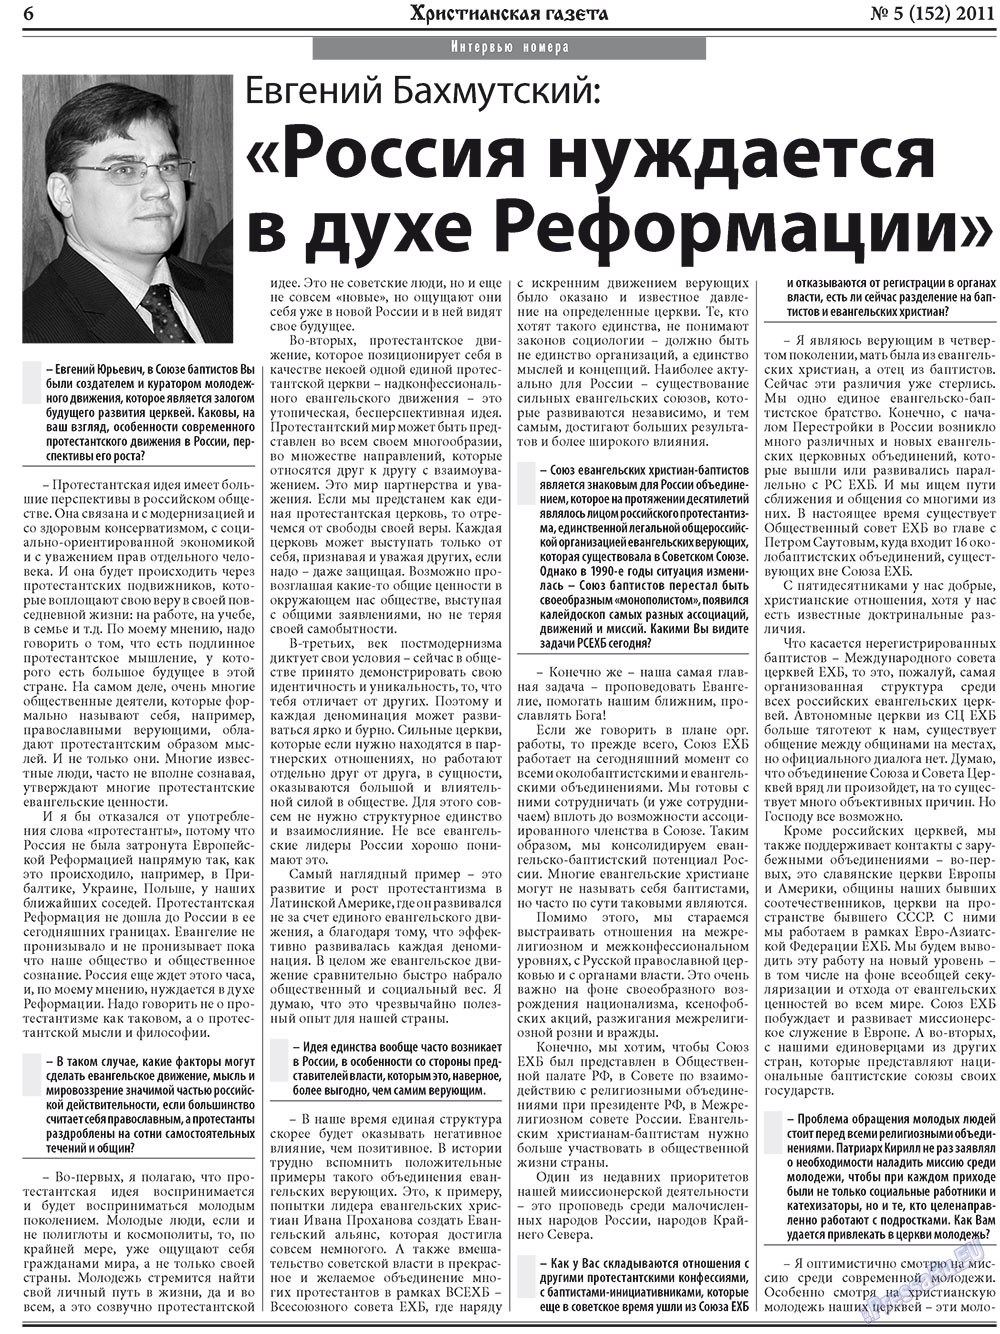 Христианская газета, газета. 2011 №5 стр.6